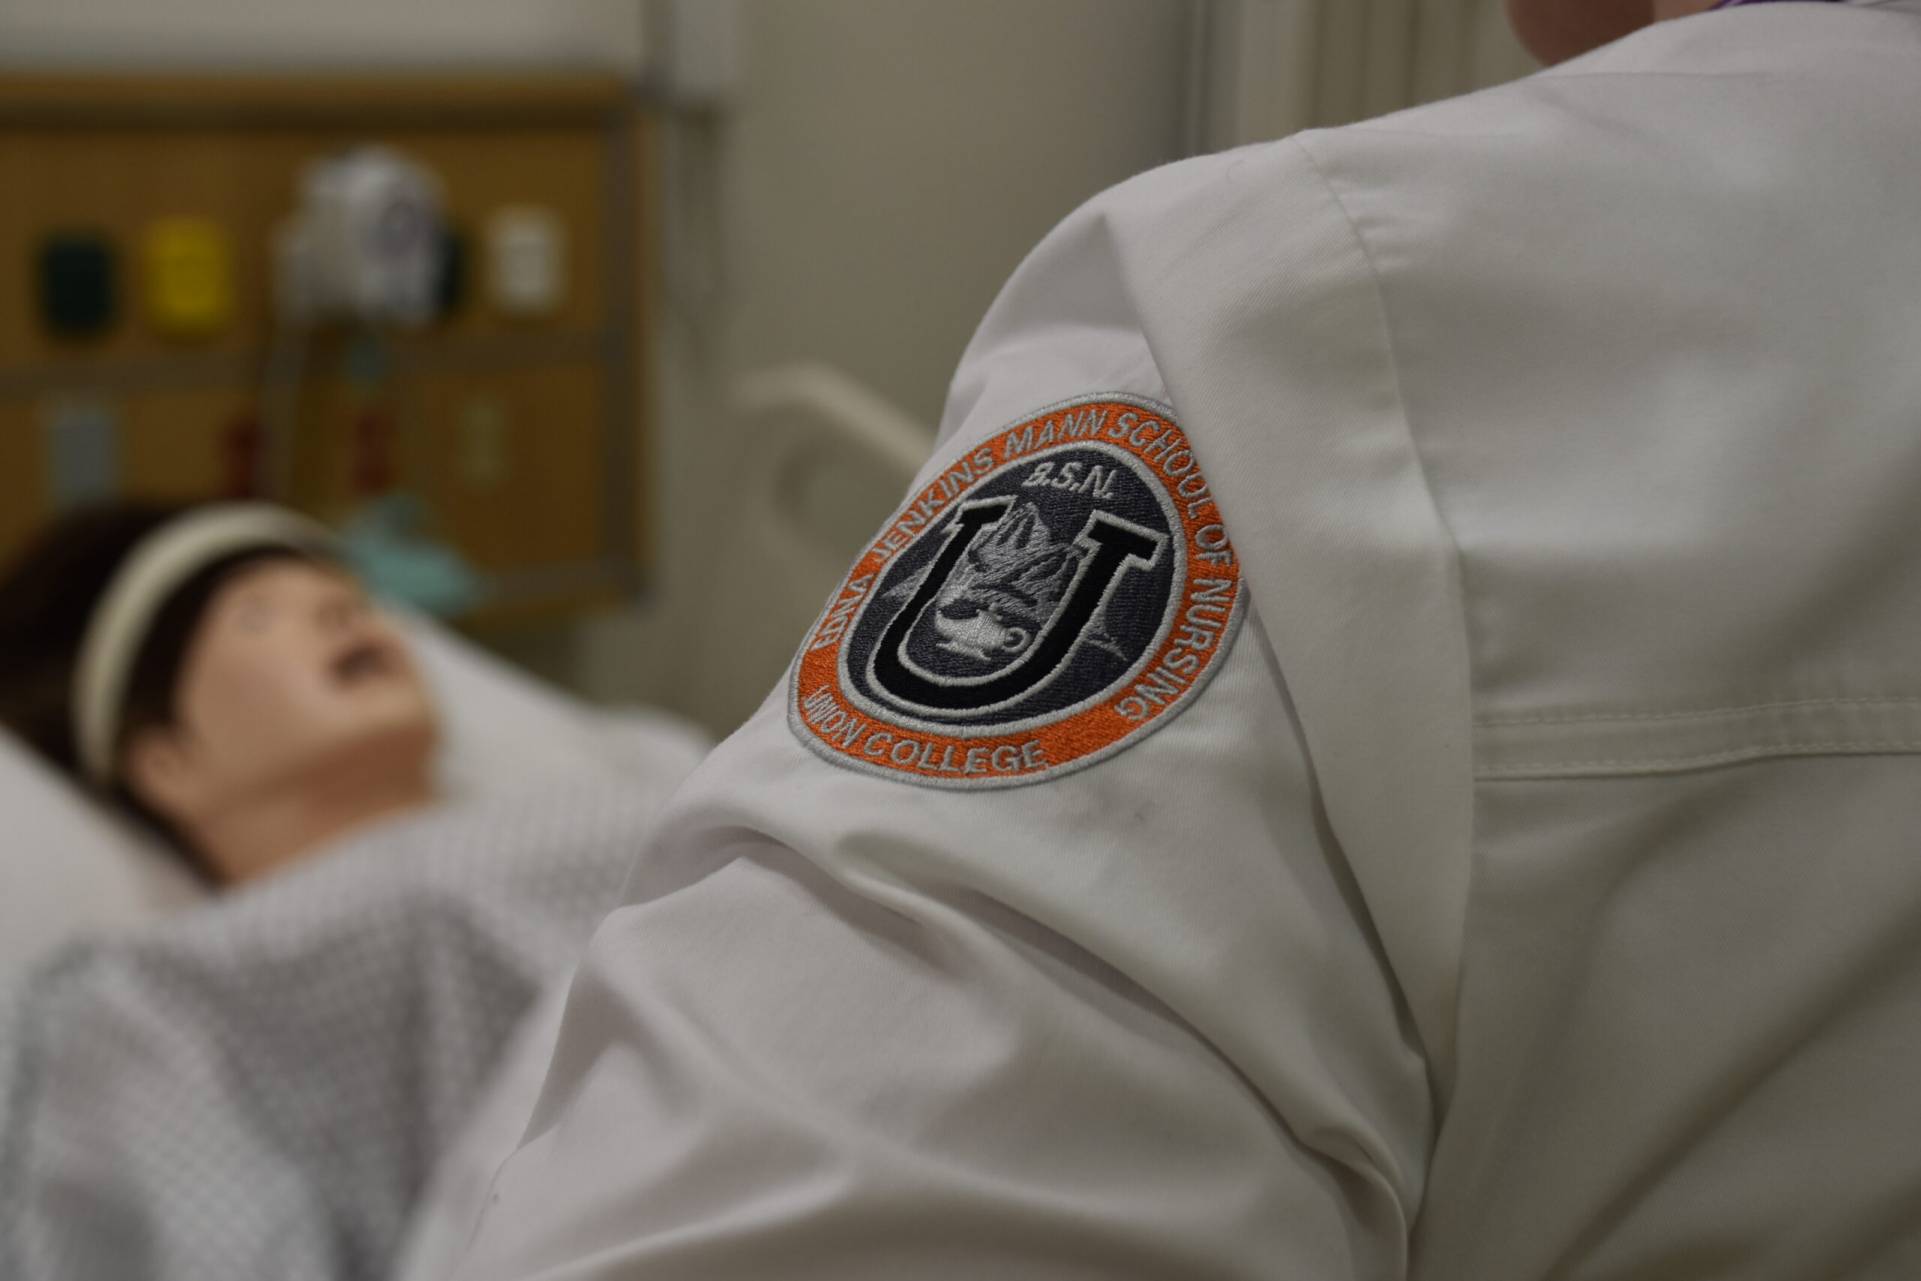 nursing white coat with nursing logo